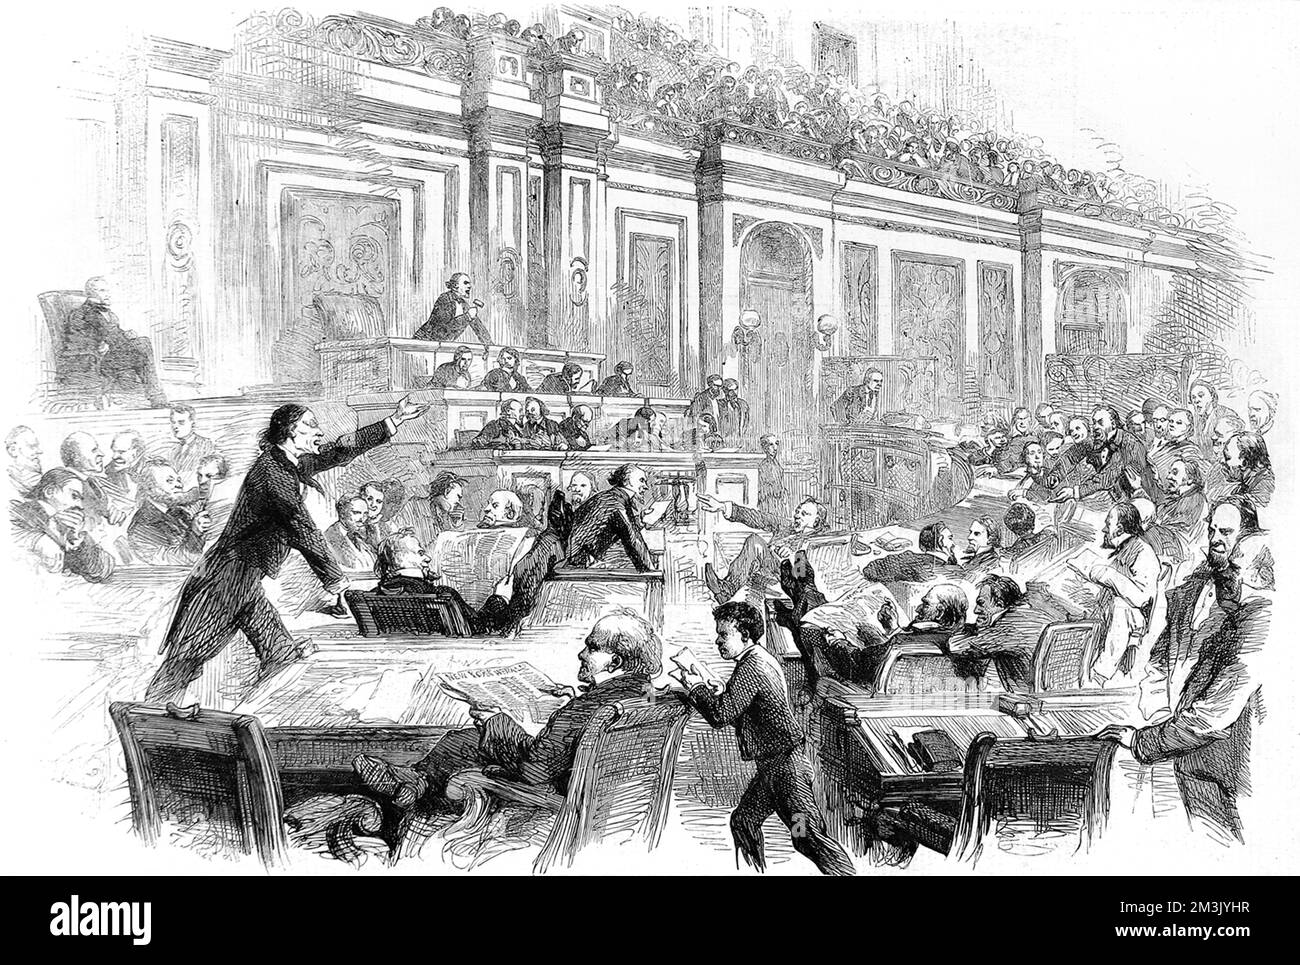 División rife en la Cámara de Representantes Americana como los estados confederados de América se forman bajo Jefferson Davis en oposición a Abraham Lincoln y sus partidarios en el Norte que querían abolir la esclavitud. Fecha: 1861 Foto de stock